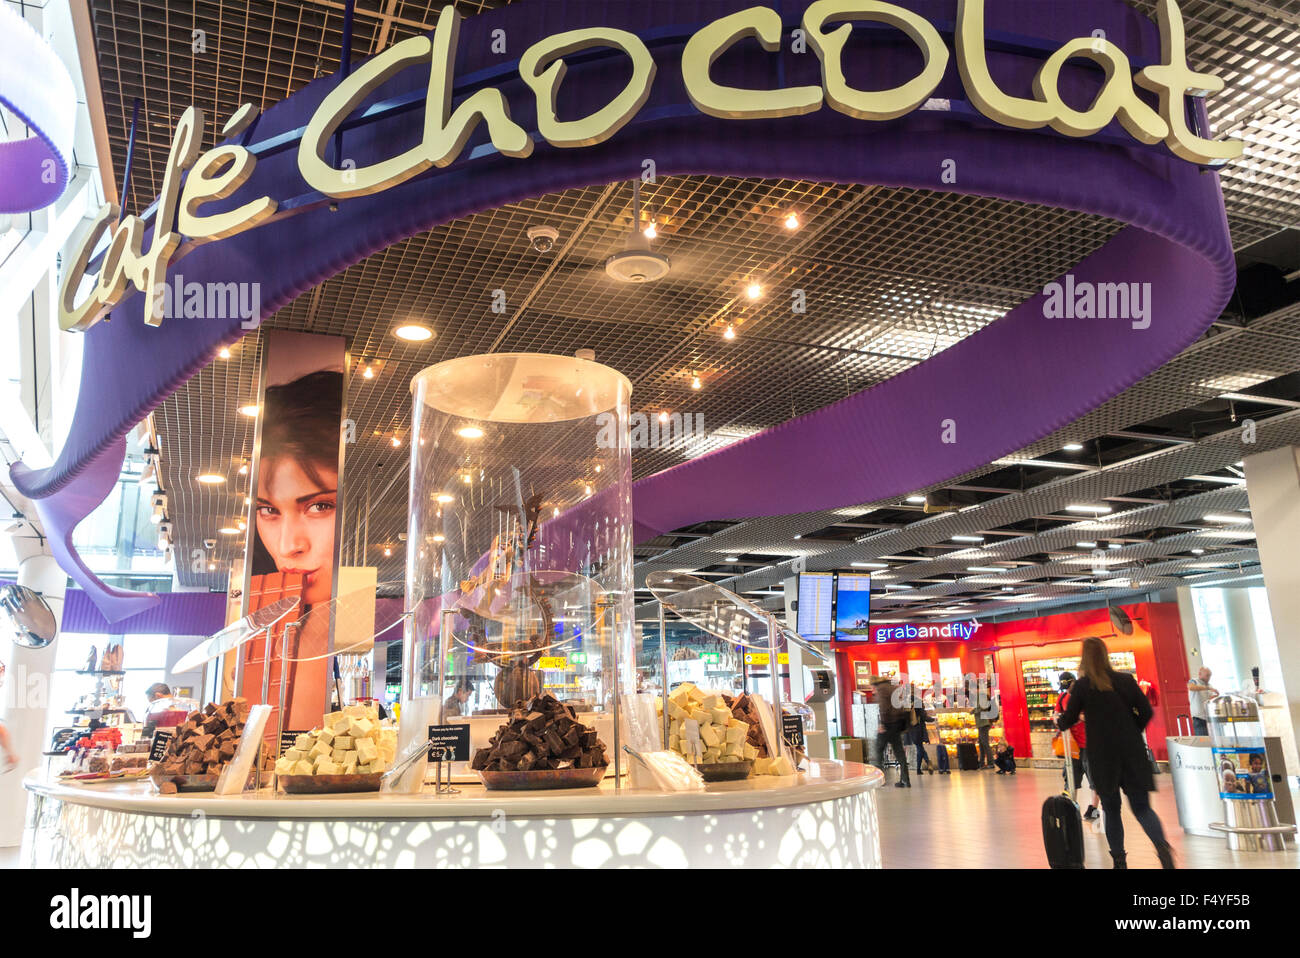 Cafe Chocolat Schokolade Shop und Kaffee-Ecke in Amsterdam Schiphol Flughafen Passagier Lounge 1 Tor B und C. Stockfoto